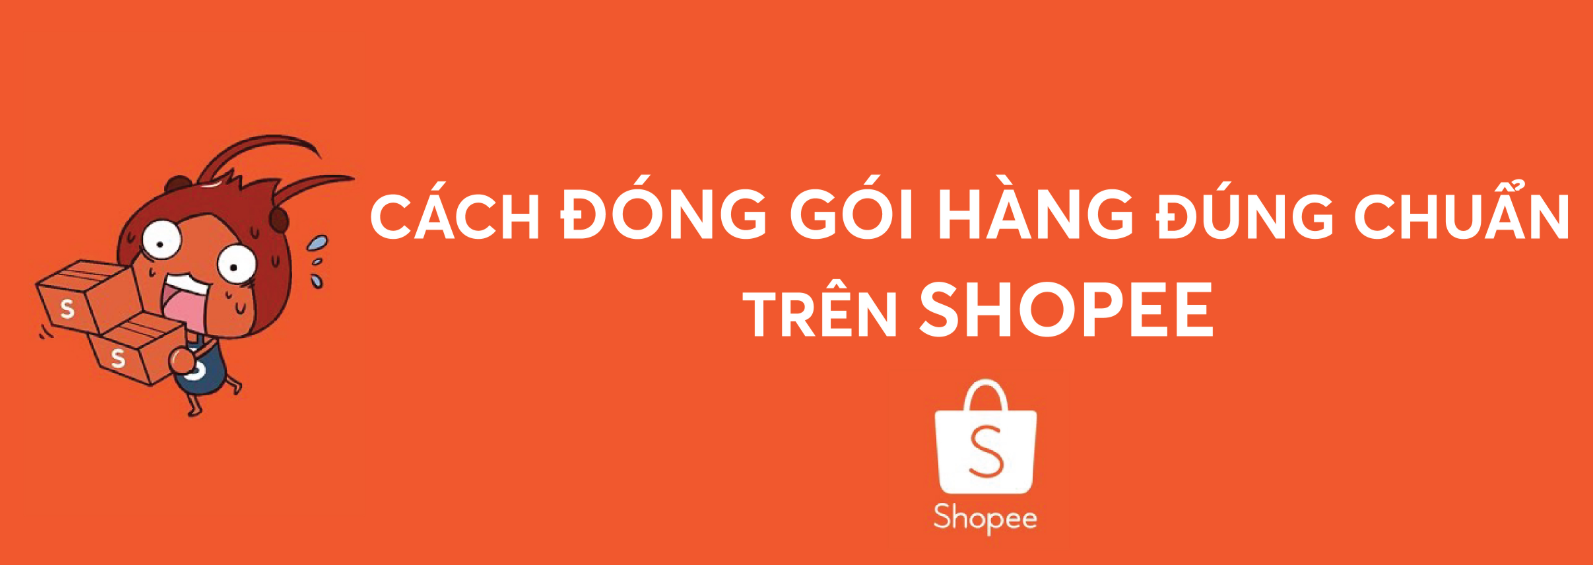 Cách đóng gói hàng Shopee đúng chuẩn, luôn đạt 5 sao từ khách hàng